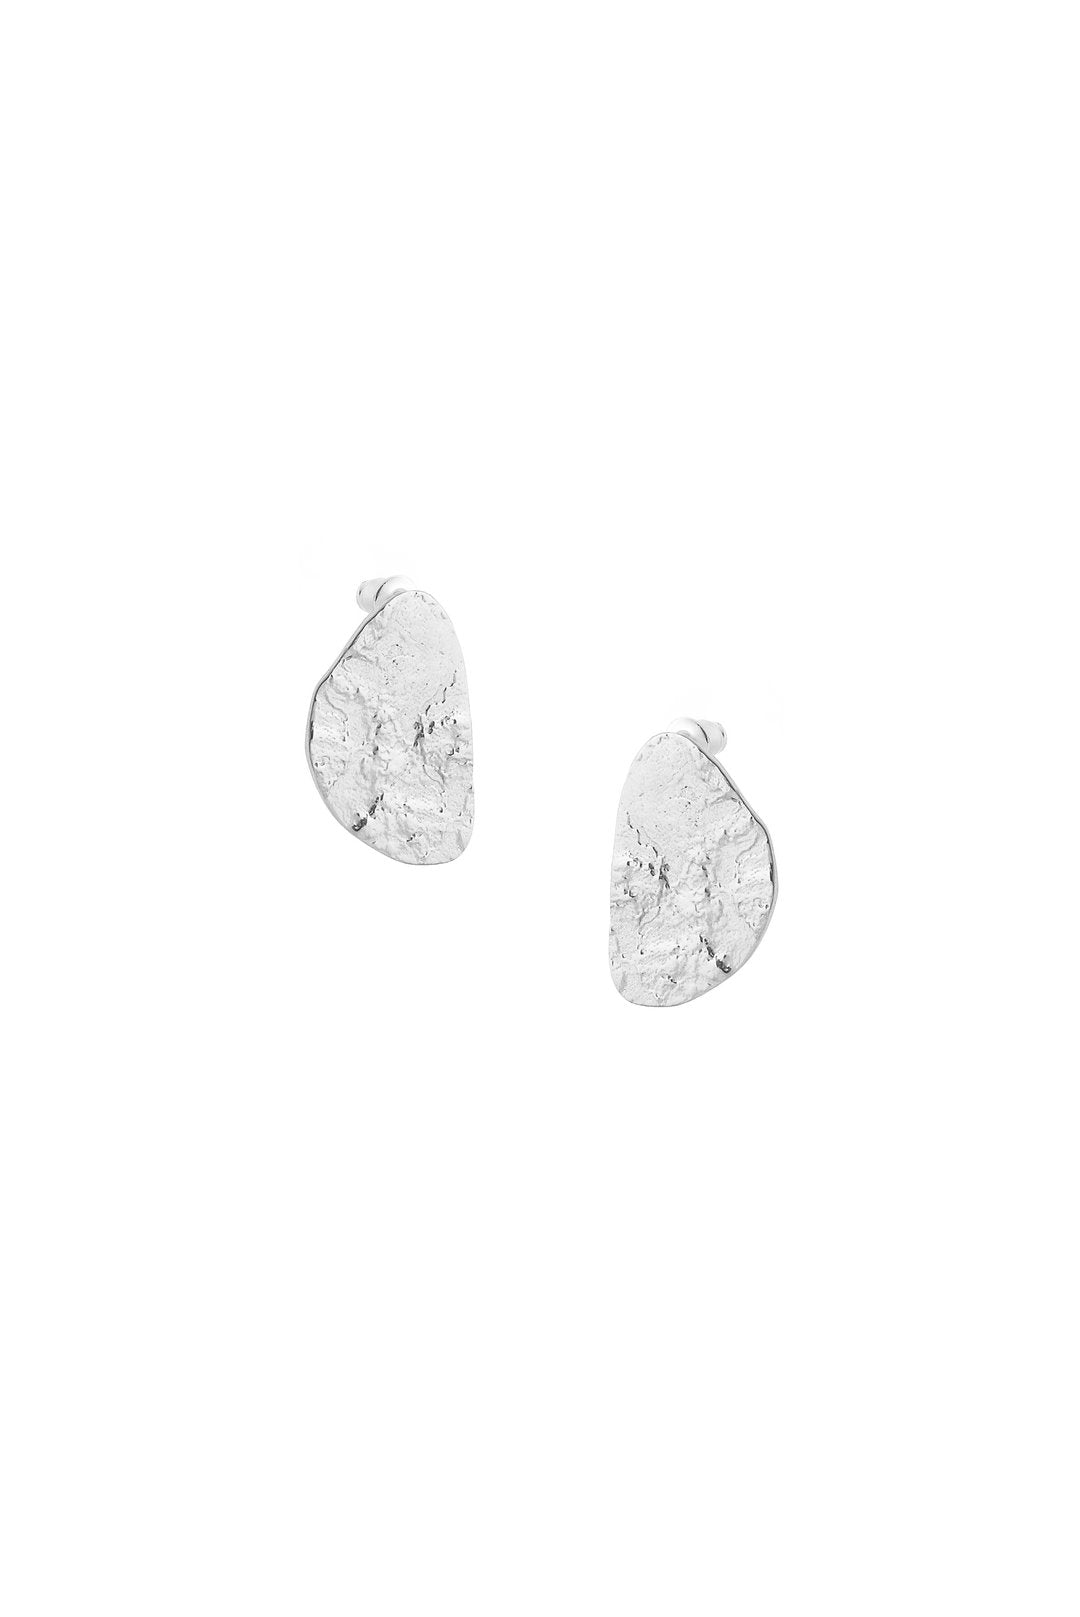 Silver Cloud Earrings - The Nancy Smillie Shop - Art, Jewellery & Designer Gifts Glasgow